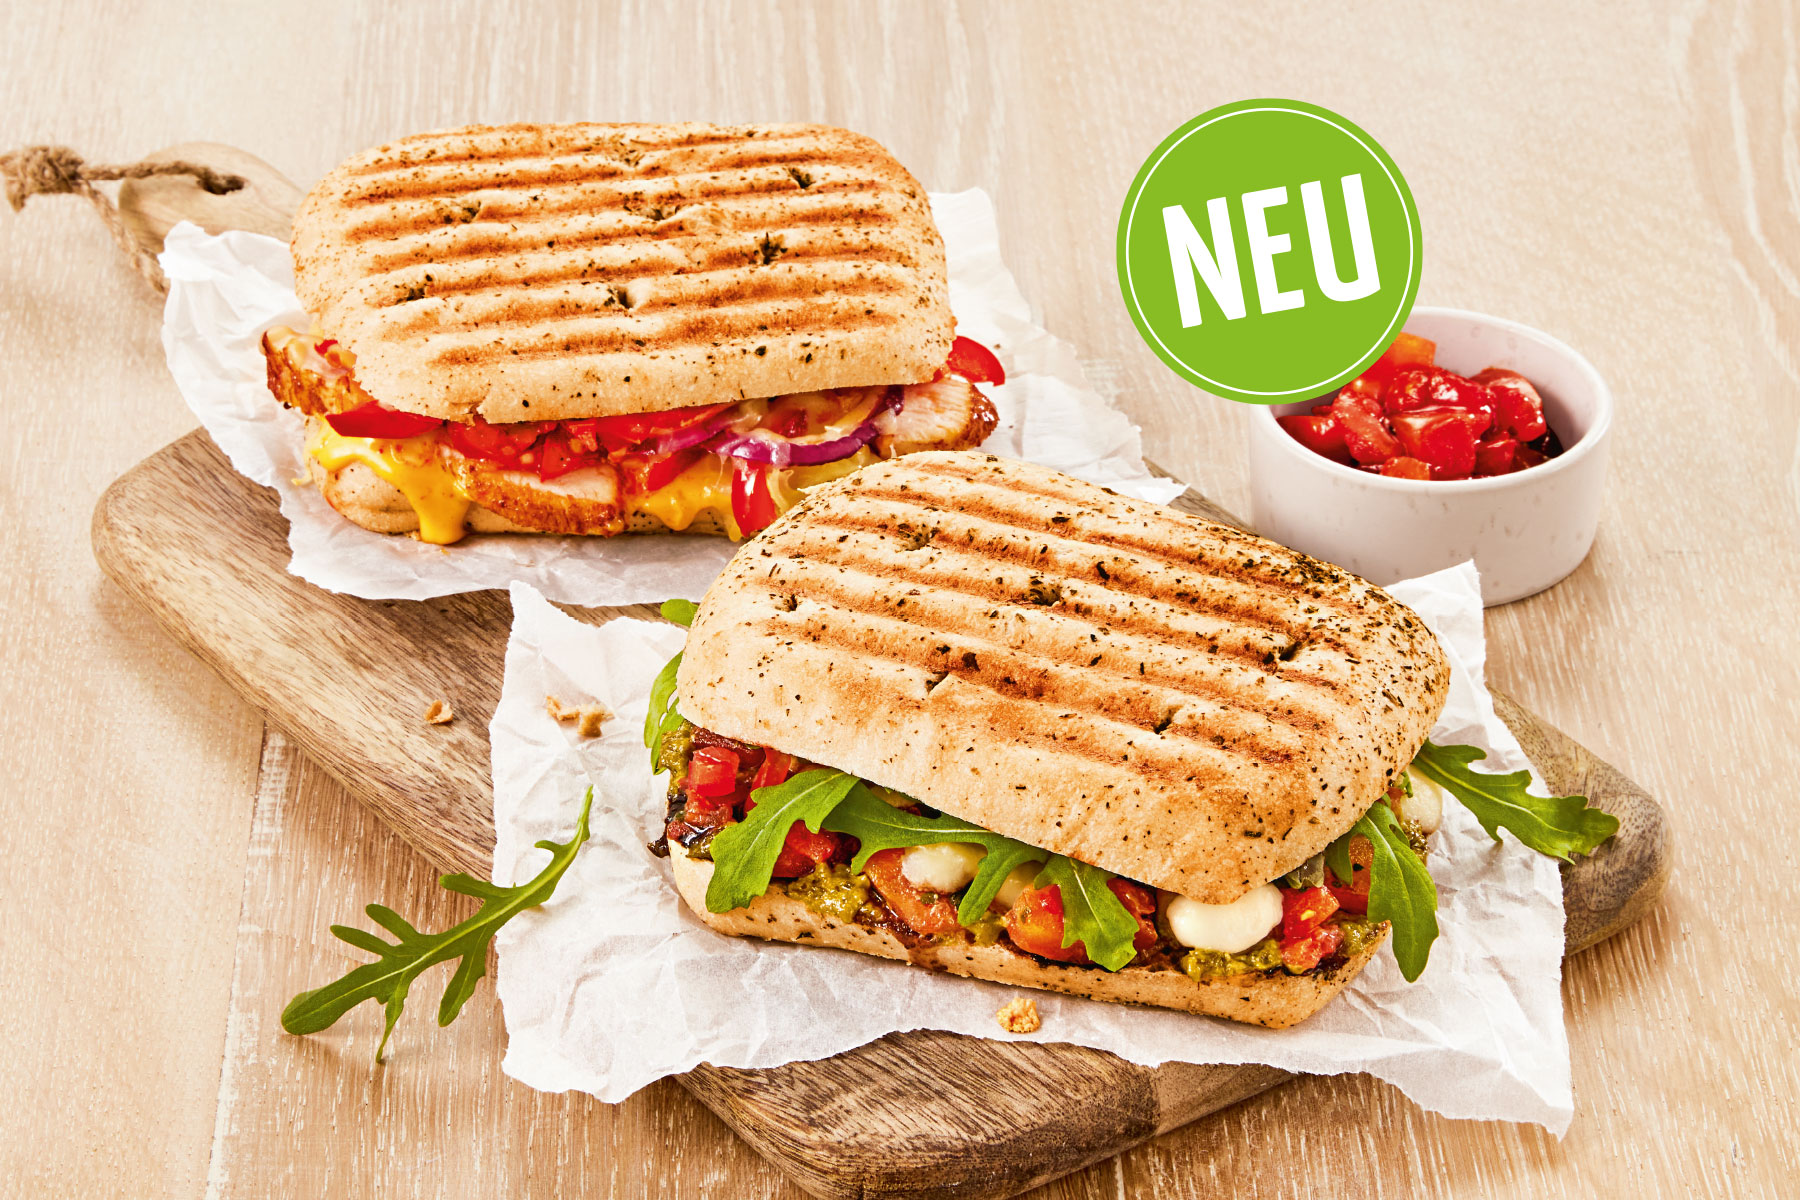 # HEISS BEGEHRT: Unsere neuen Hot Sandwiches!